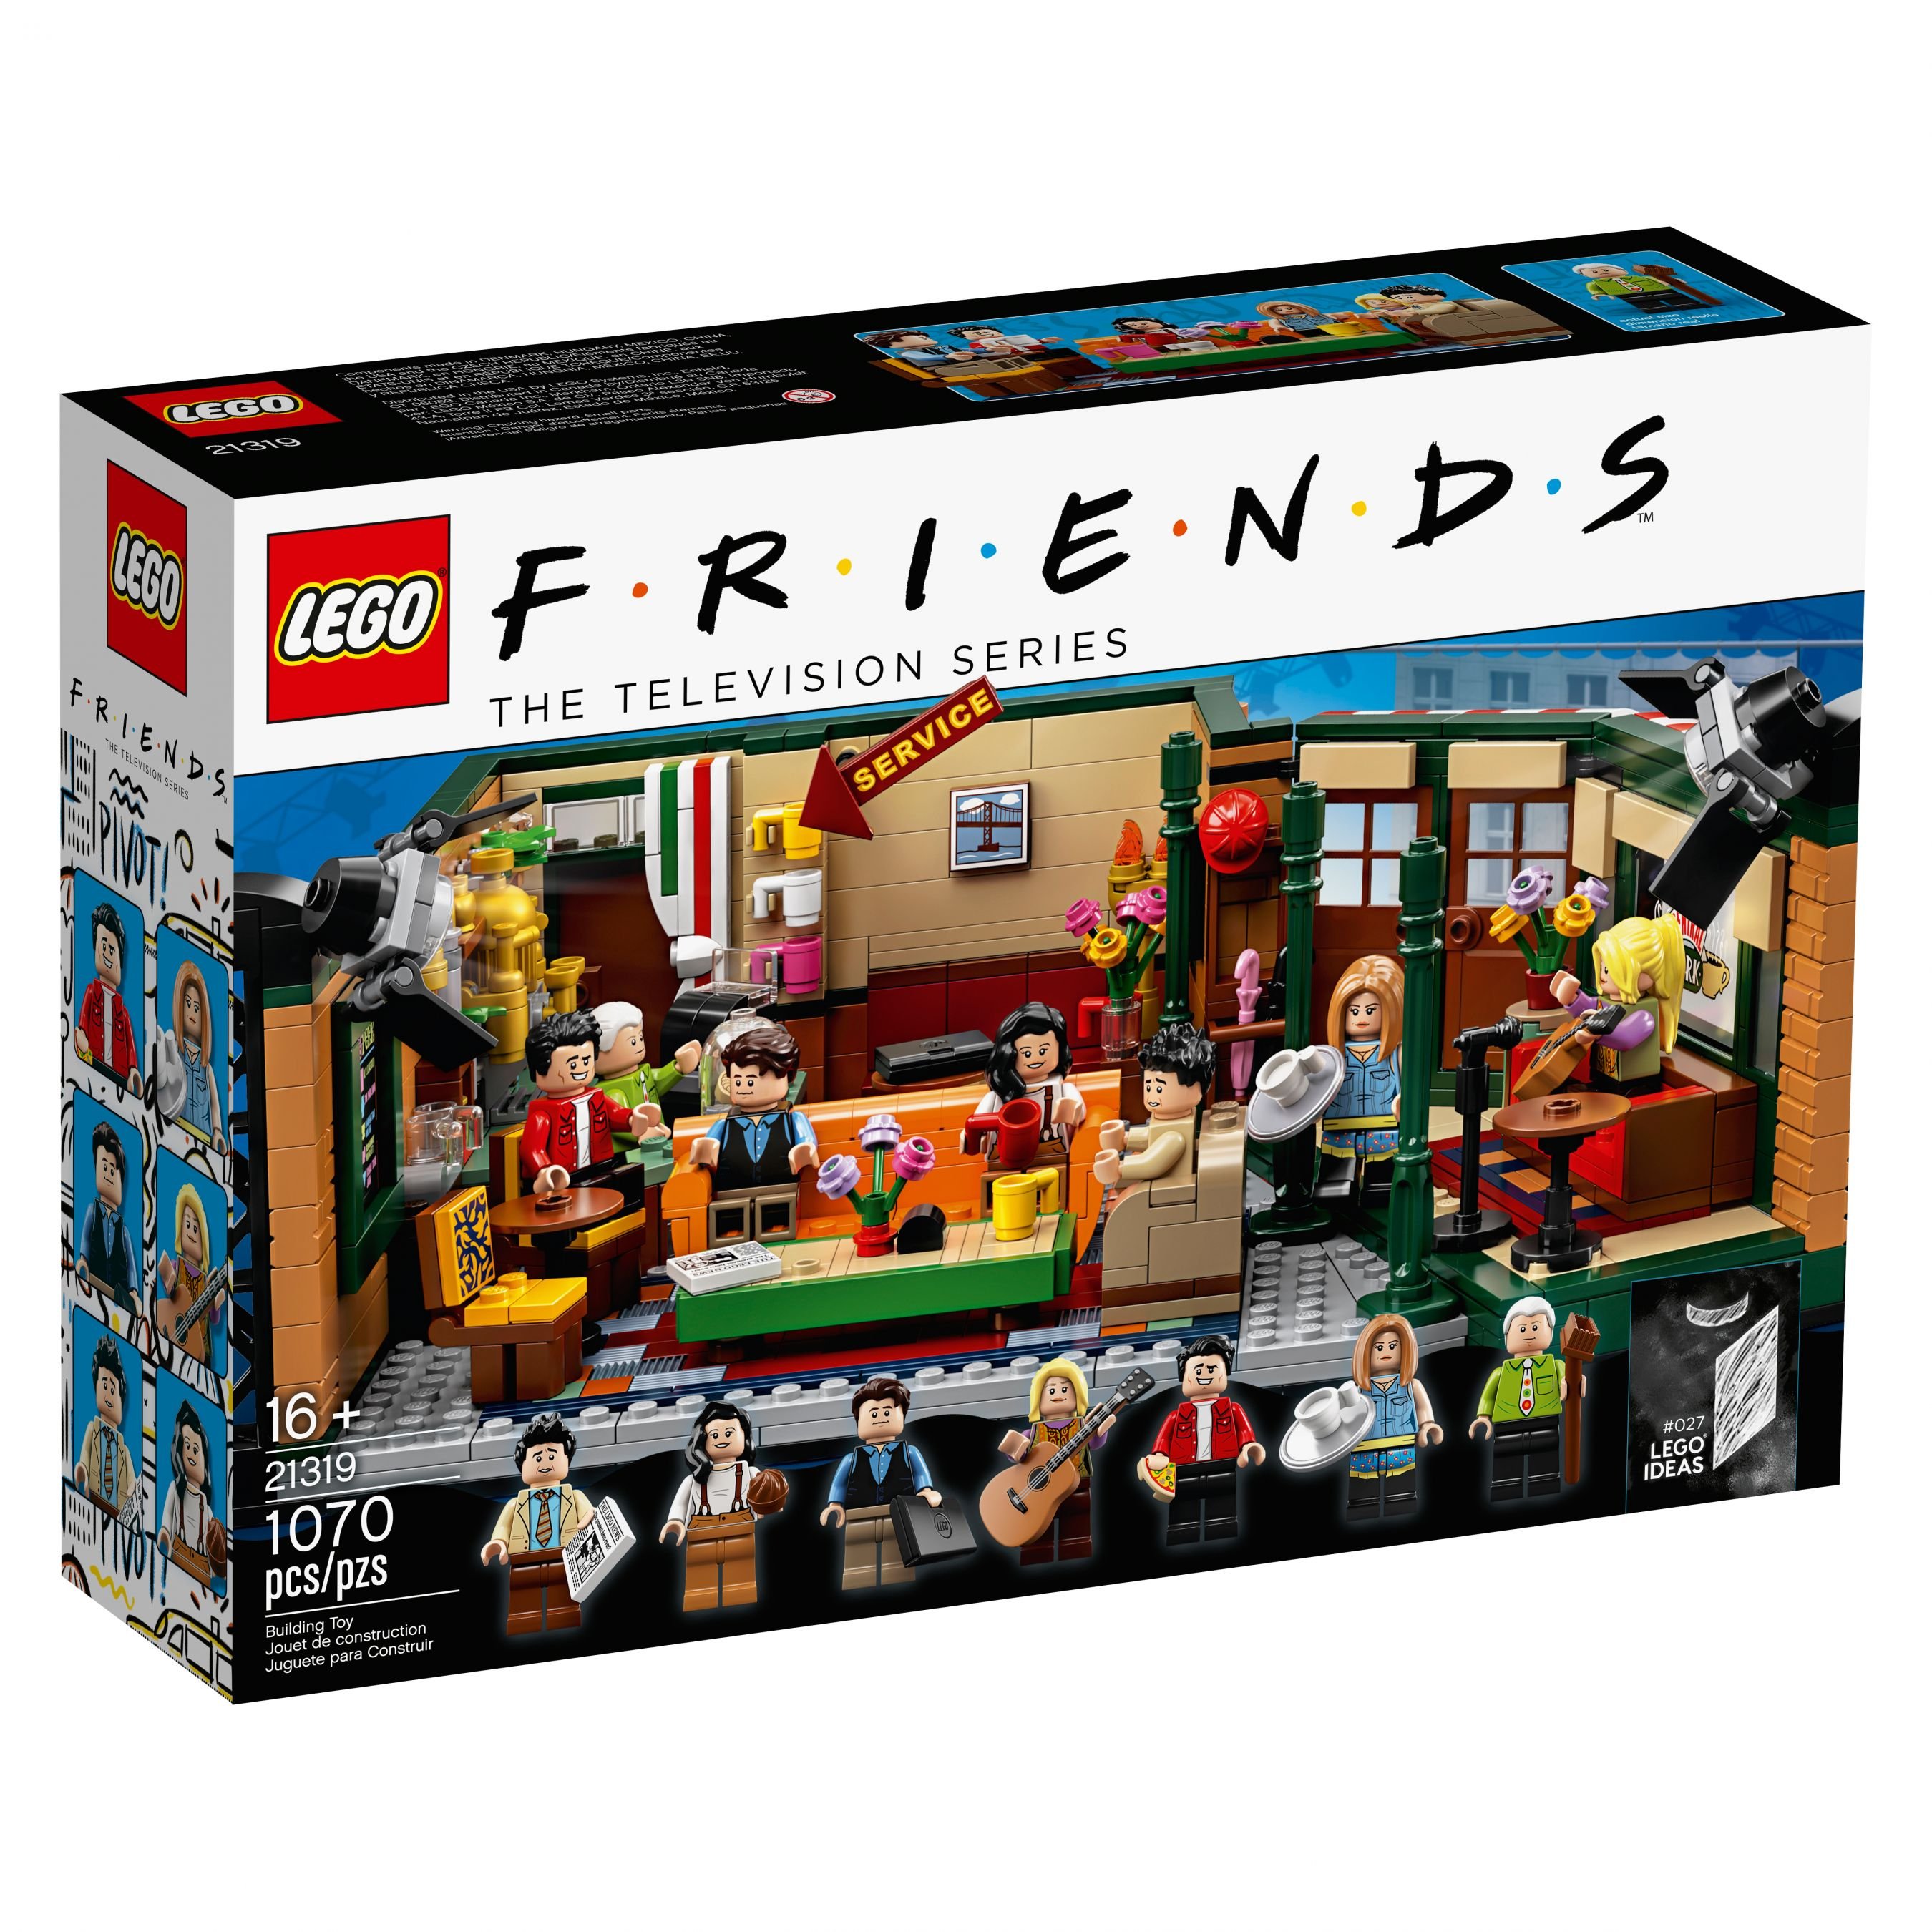 LEGO Ideas 21319 Central Perk LEGO_21319_alt1.jpg